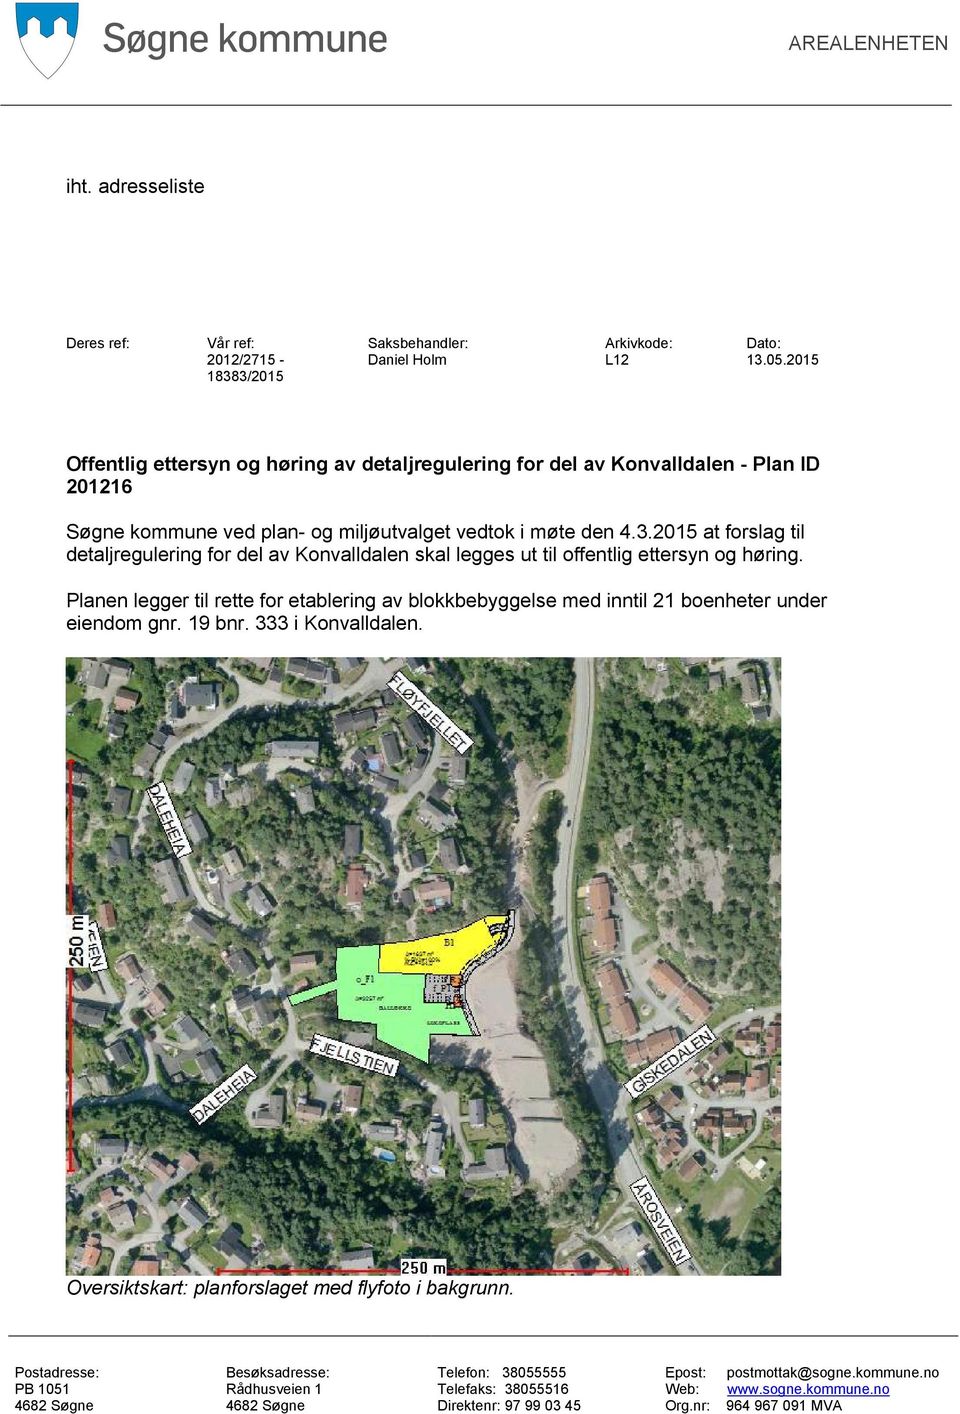 Planen legger til rette for etablering av blokkbebyggelse med inntil 21 boenheter under eiendom gnr. 19 bnr. 333 i Konvalldalen. Oversiktskart: planforslaget med flyfoto i bakgrunn.